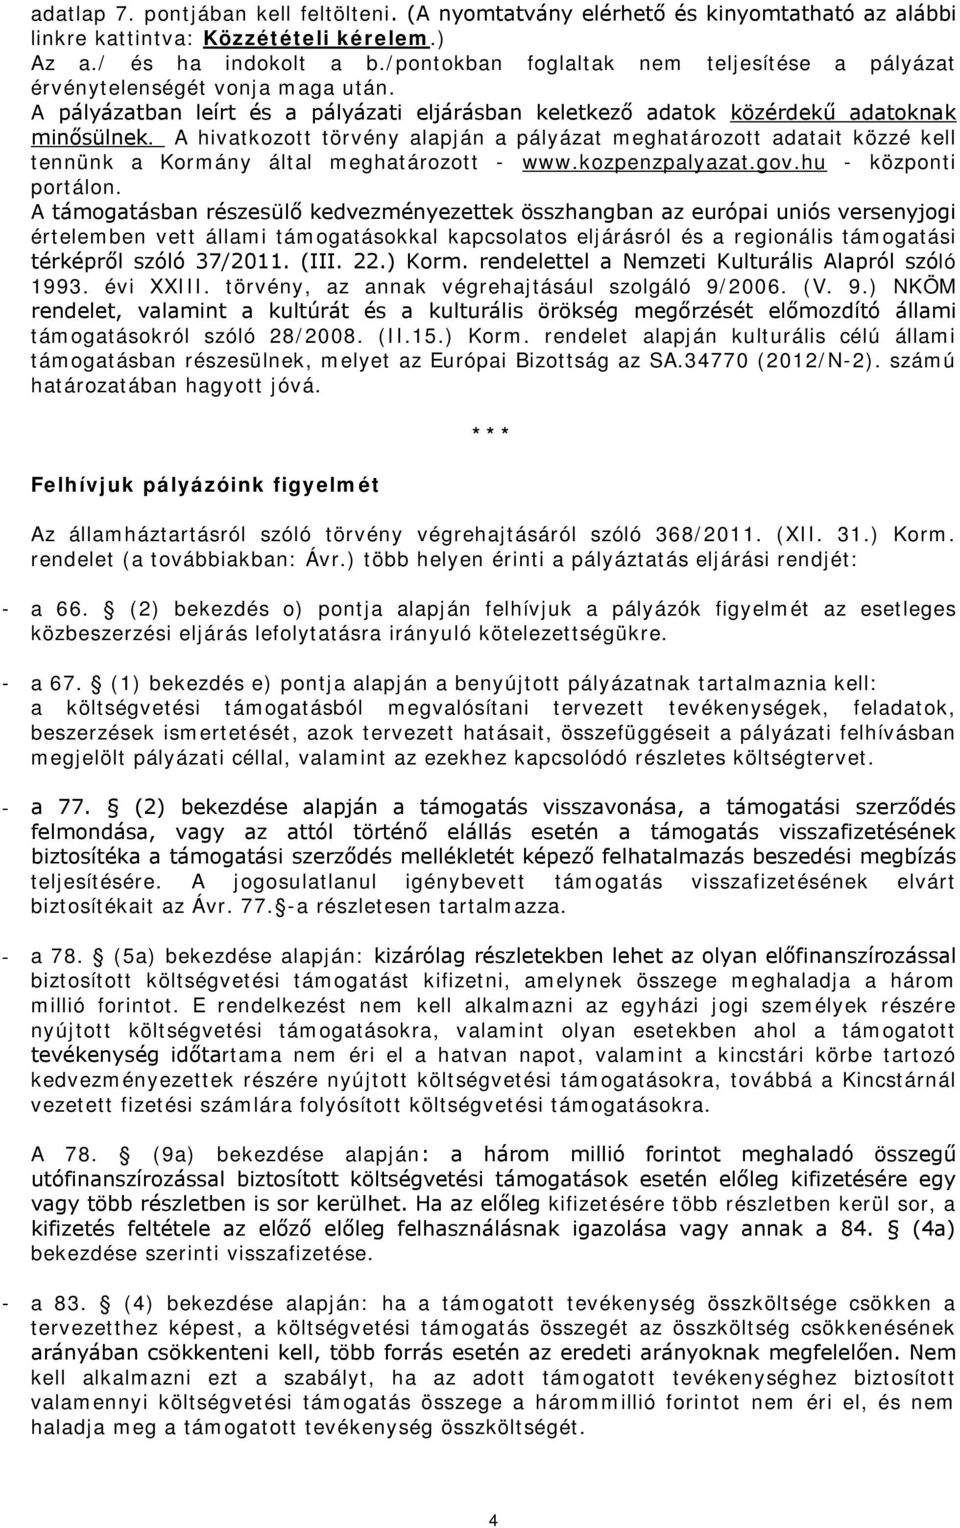 A hivatkozott törvény alapján a pályázat meghatározott adatait közzé kell tennünk a Kormány által meghatározott - www.kozpenzpalyazat.gov.hu - központi portálon.